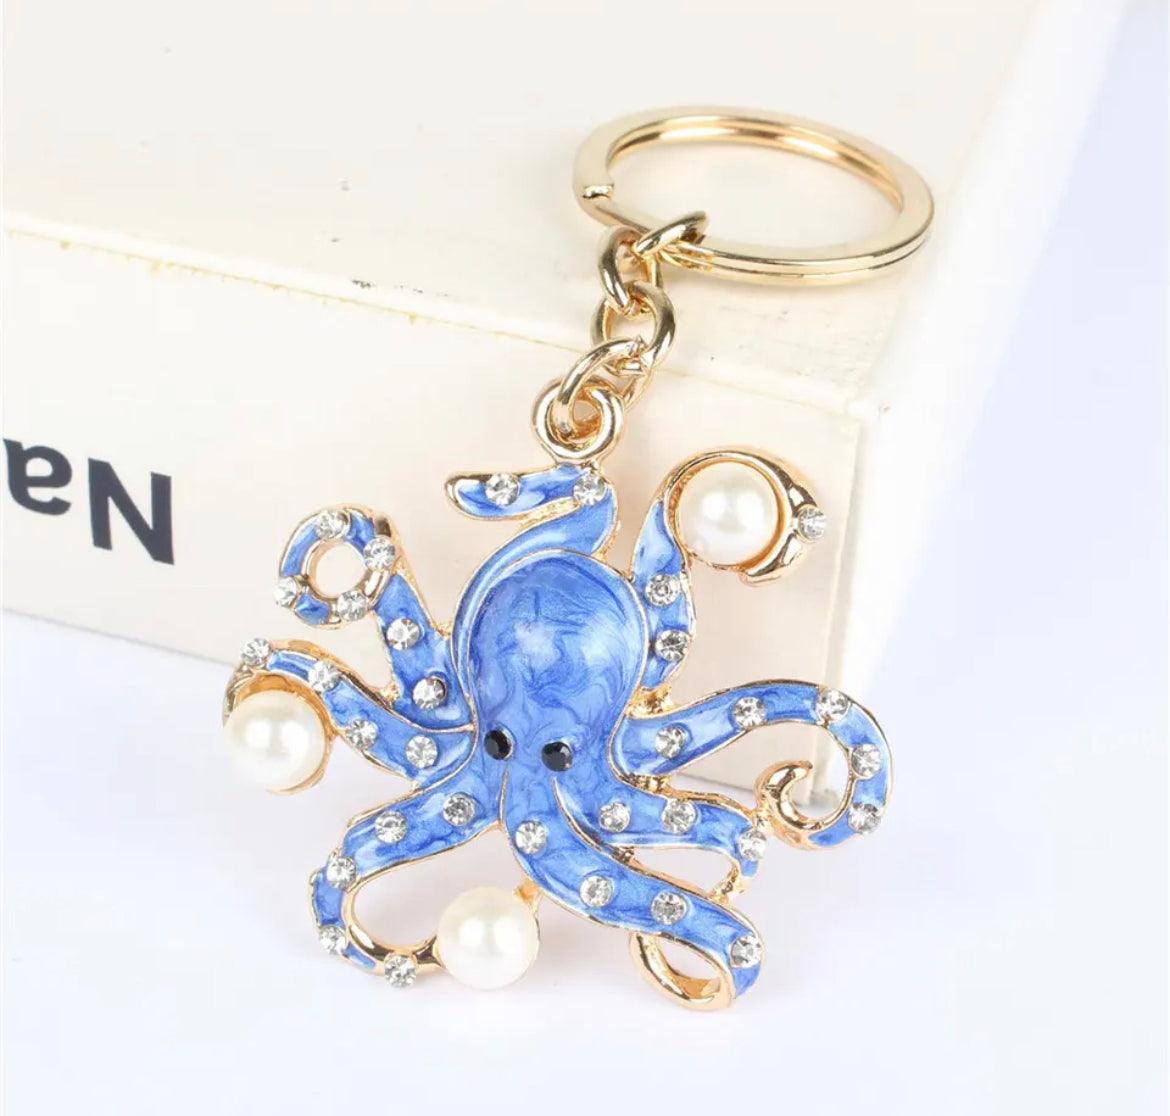 On Sale- Keyring- Octopus